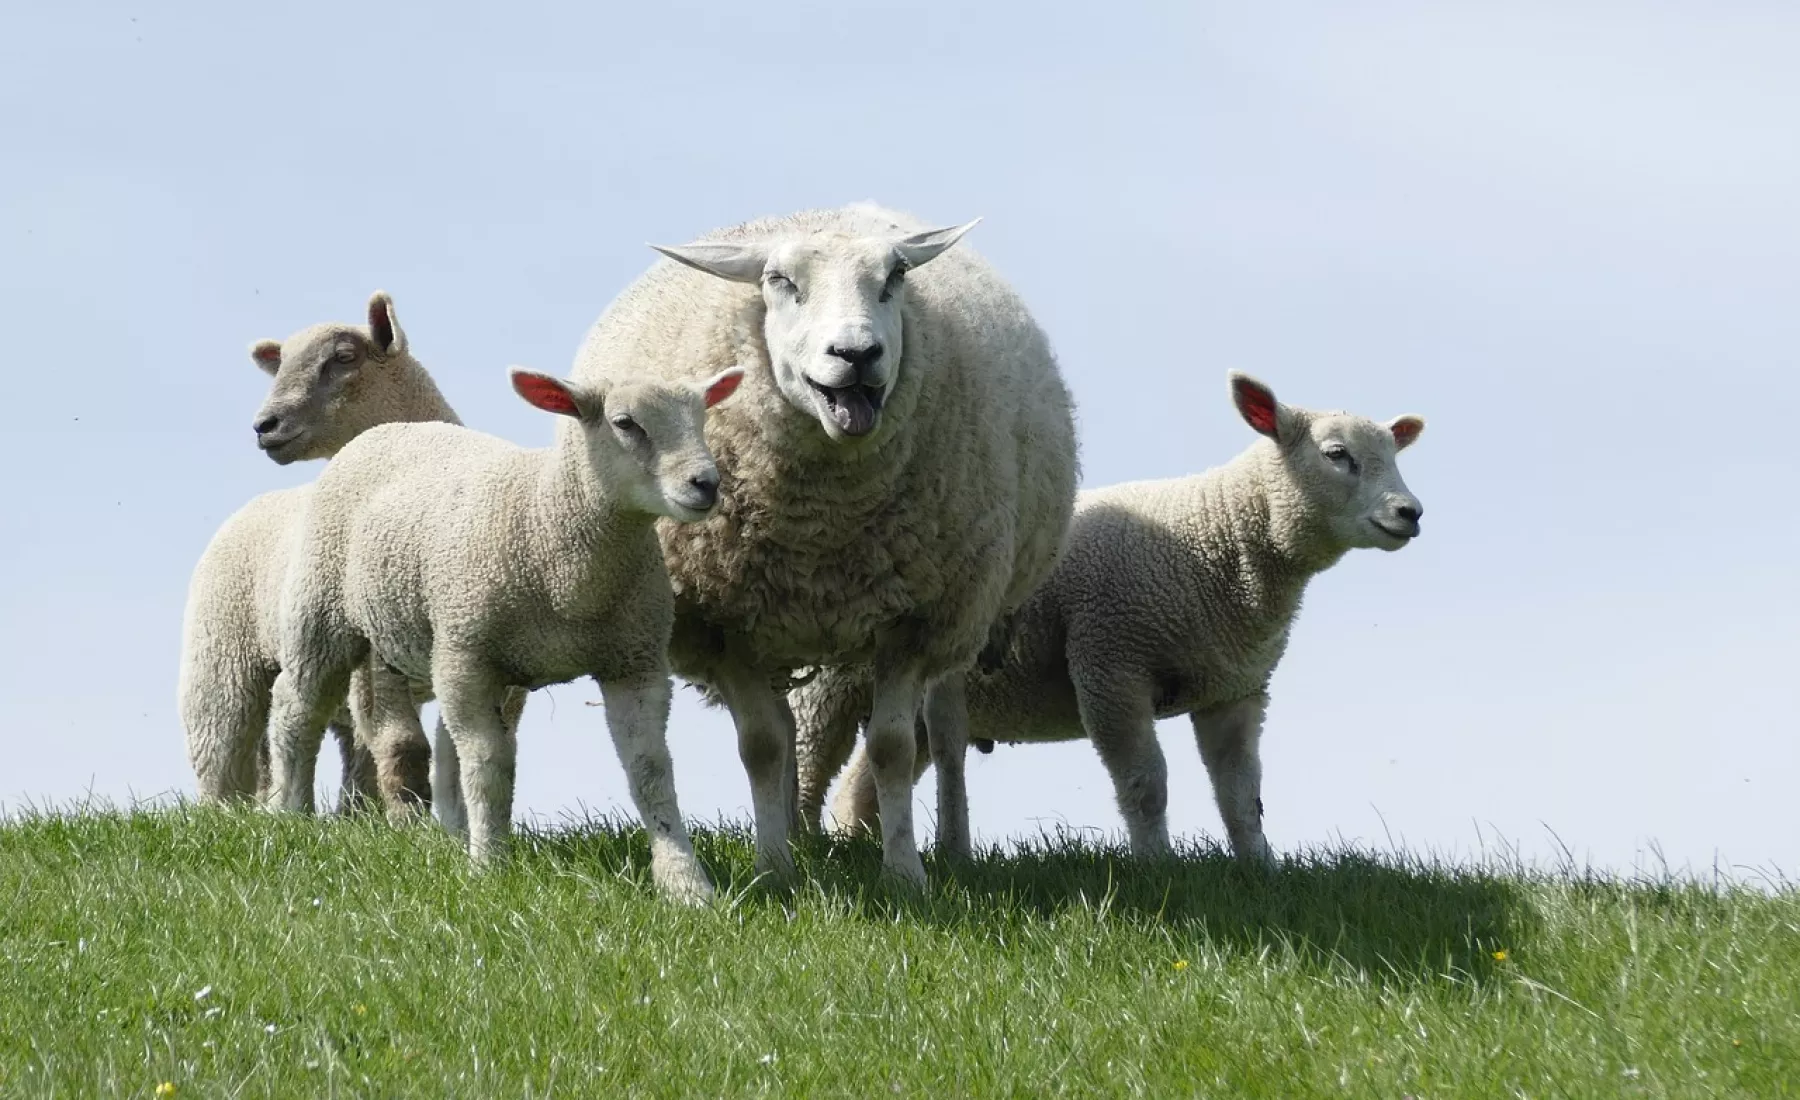 Schafe auf einer Weide